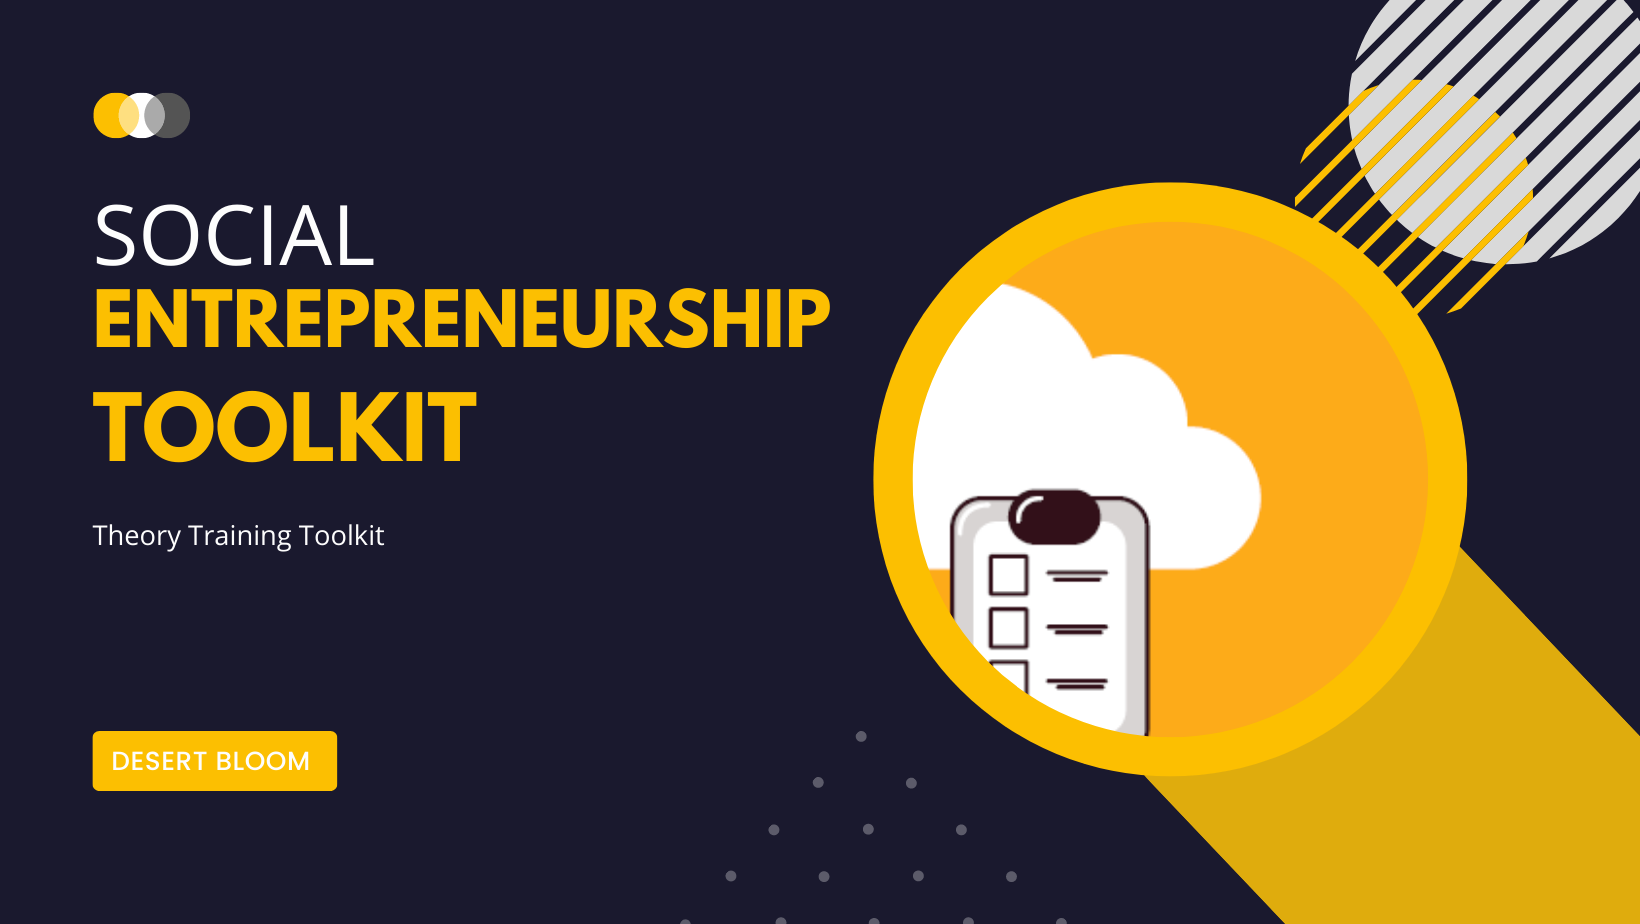 November 2022 – Sharing Toolkit on Social Entrepreneurship